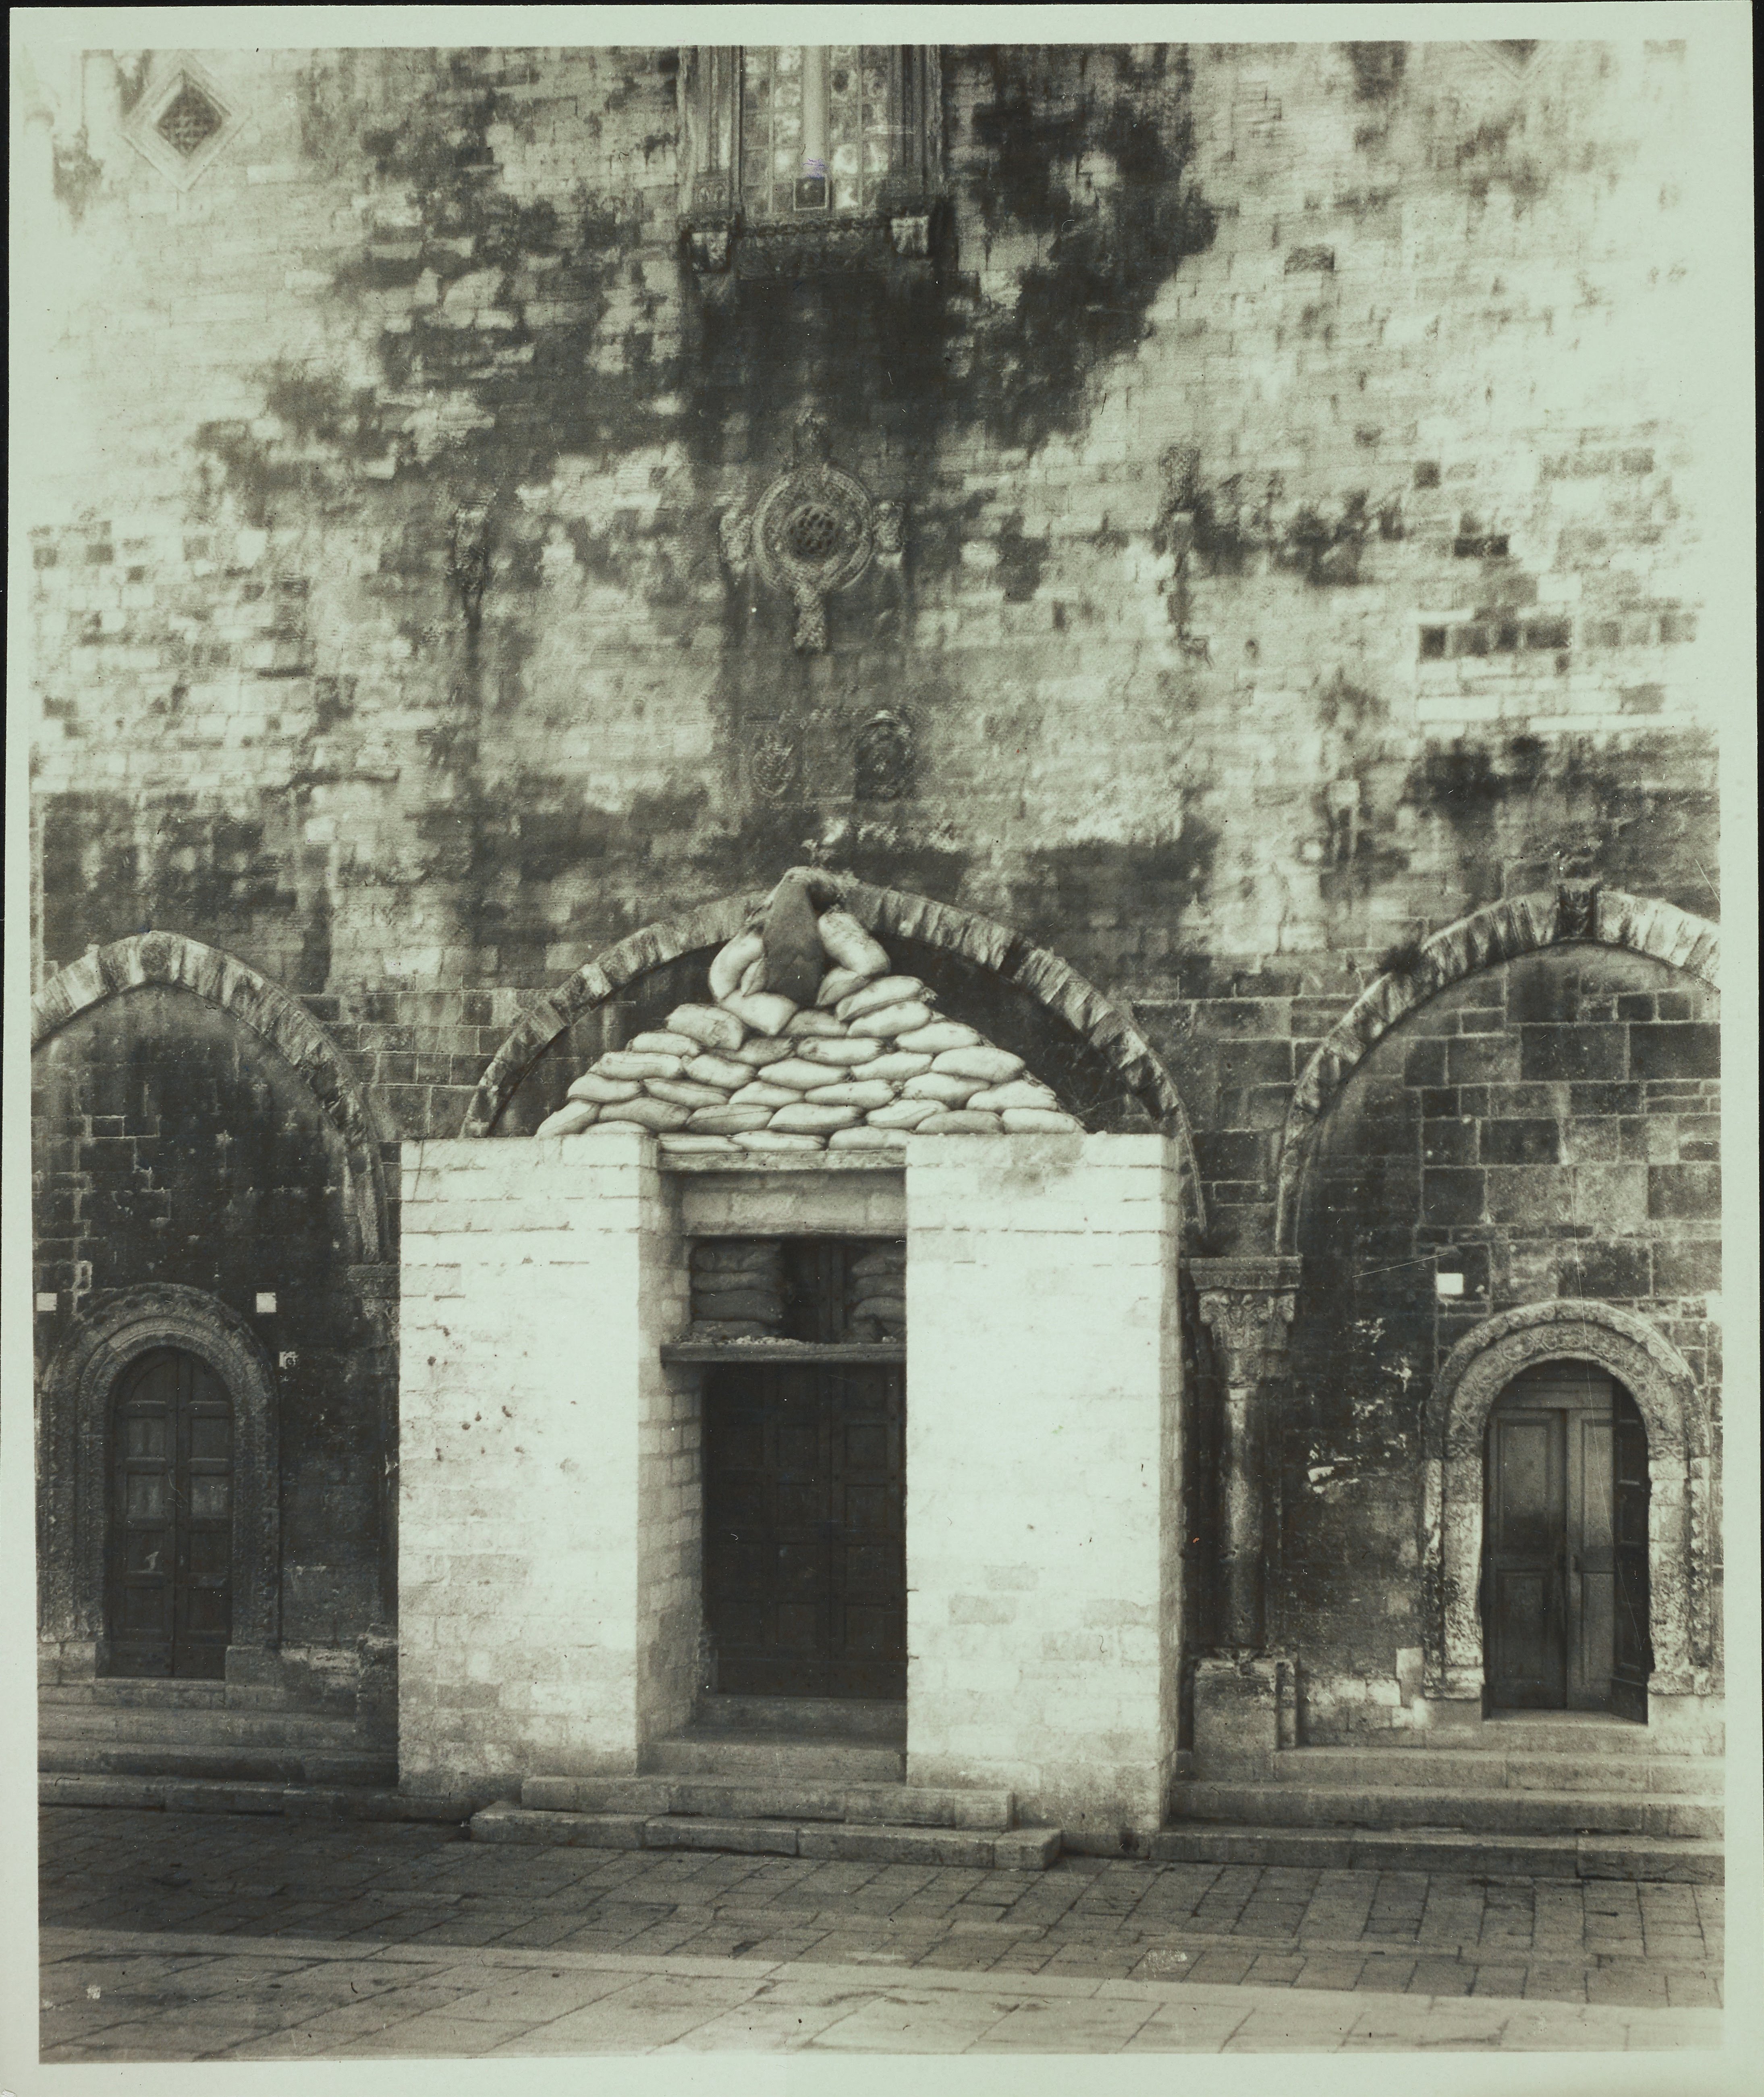 Fotografo non identificato, Ruvo di Puglia - Cattedrale S. Maria Assunta, il portale con la protezione anti aerea, 1926-1950, gelatina ai sali d'argento/carta, MPI6091664